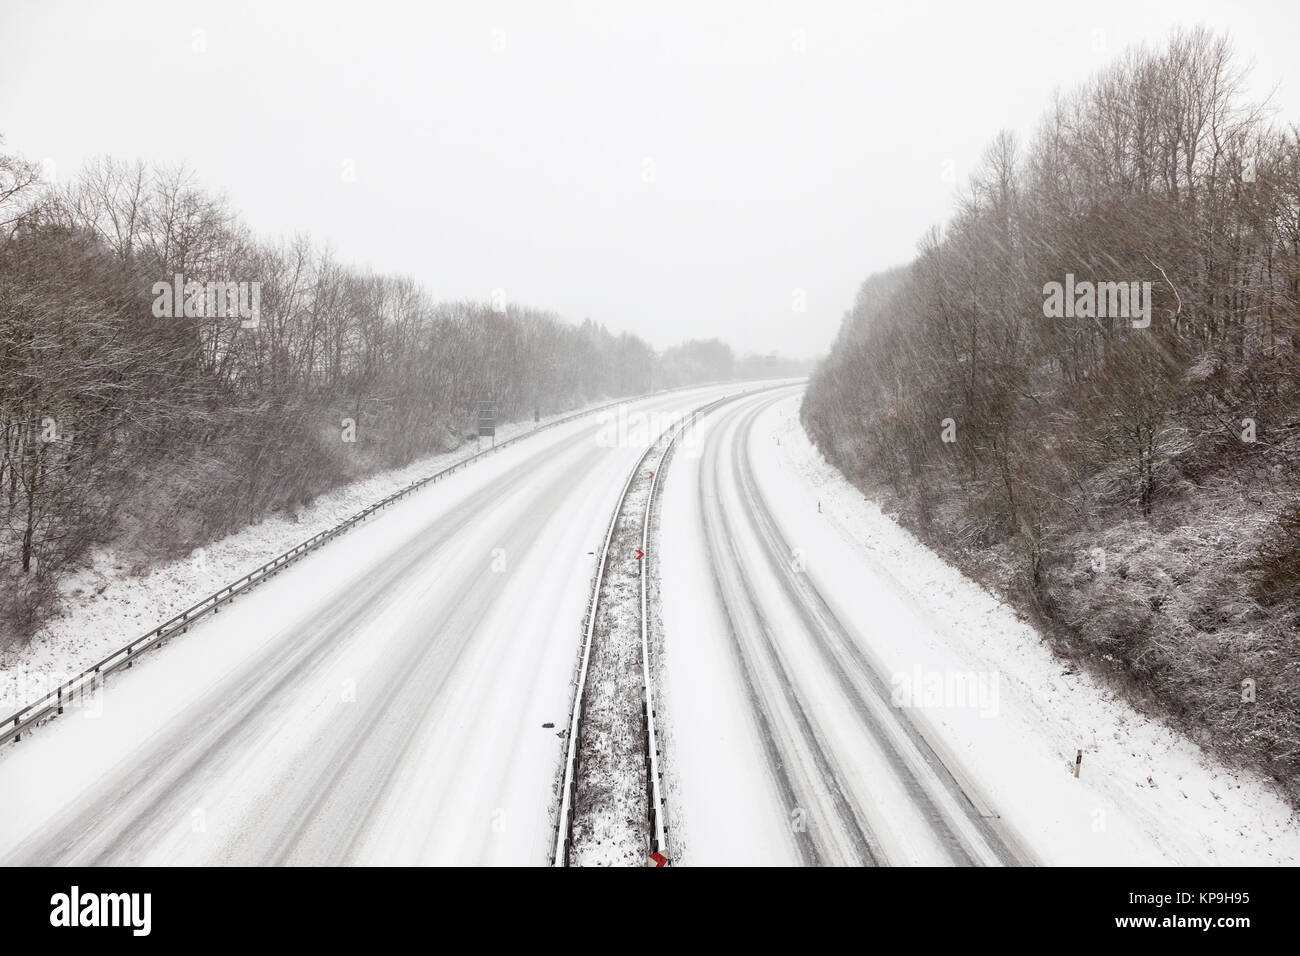 Autostrada ricoperta di neve durante una tempesta di neve in inverno Foto Stock